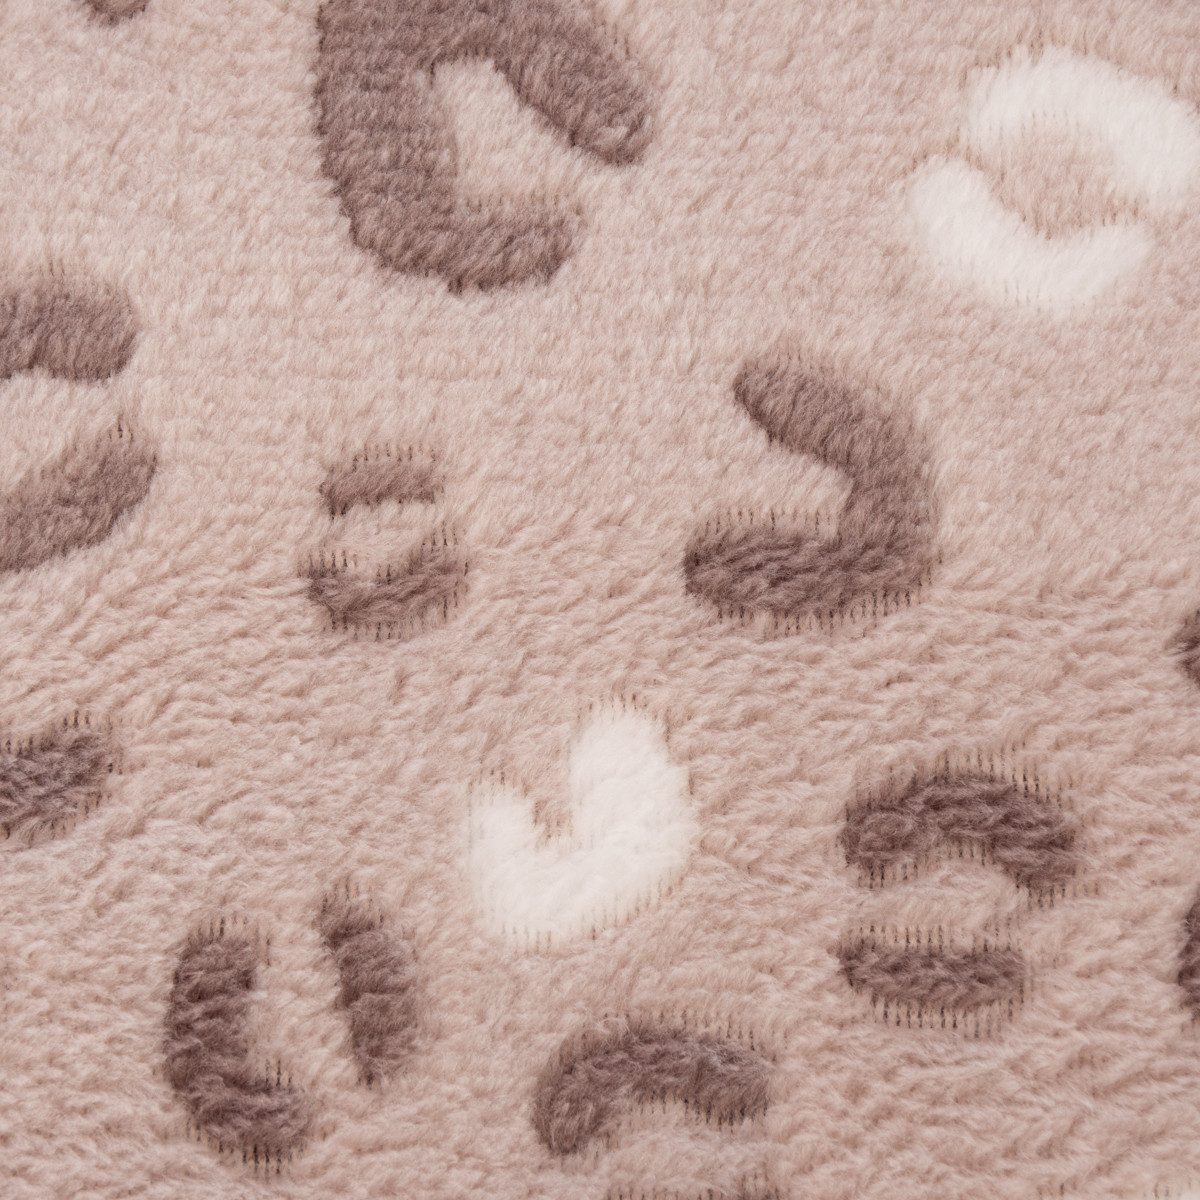 SCHÖNER LEBEN. Stoff Wellness Fleece Leopardenmuster sand weiß taupe 1,45m, pflegeleicht